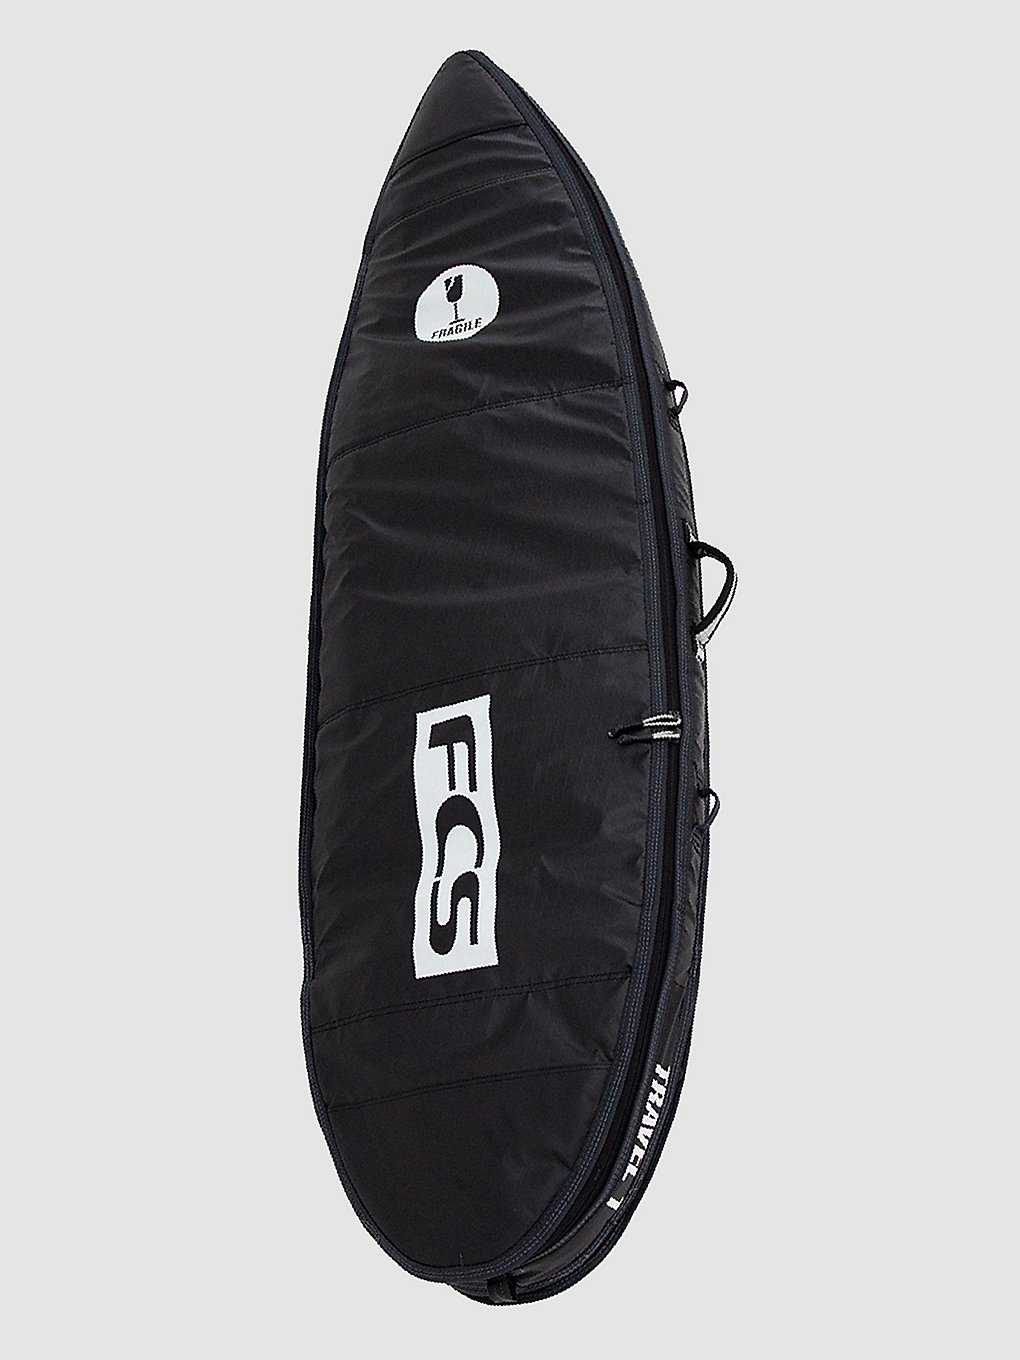 FCS Travel 1 All Purpose 6'7 Surfboard-Tasche grey kaufen